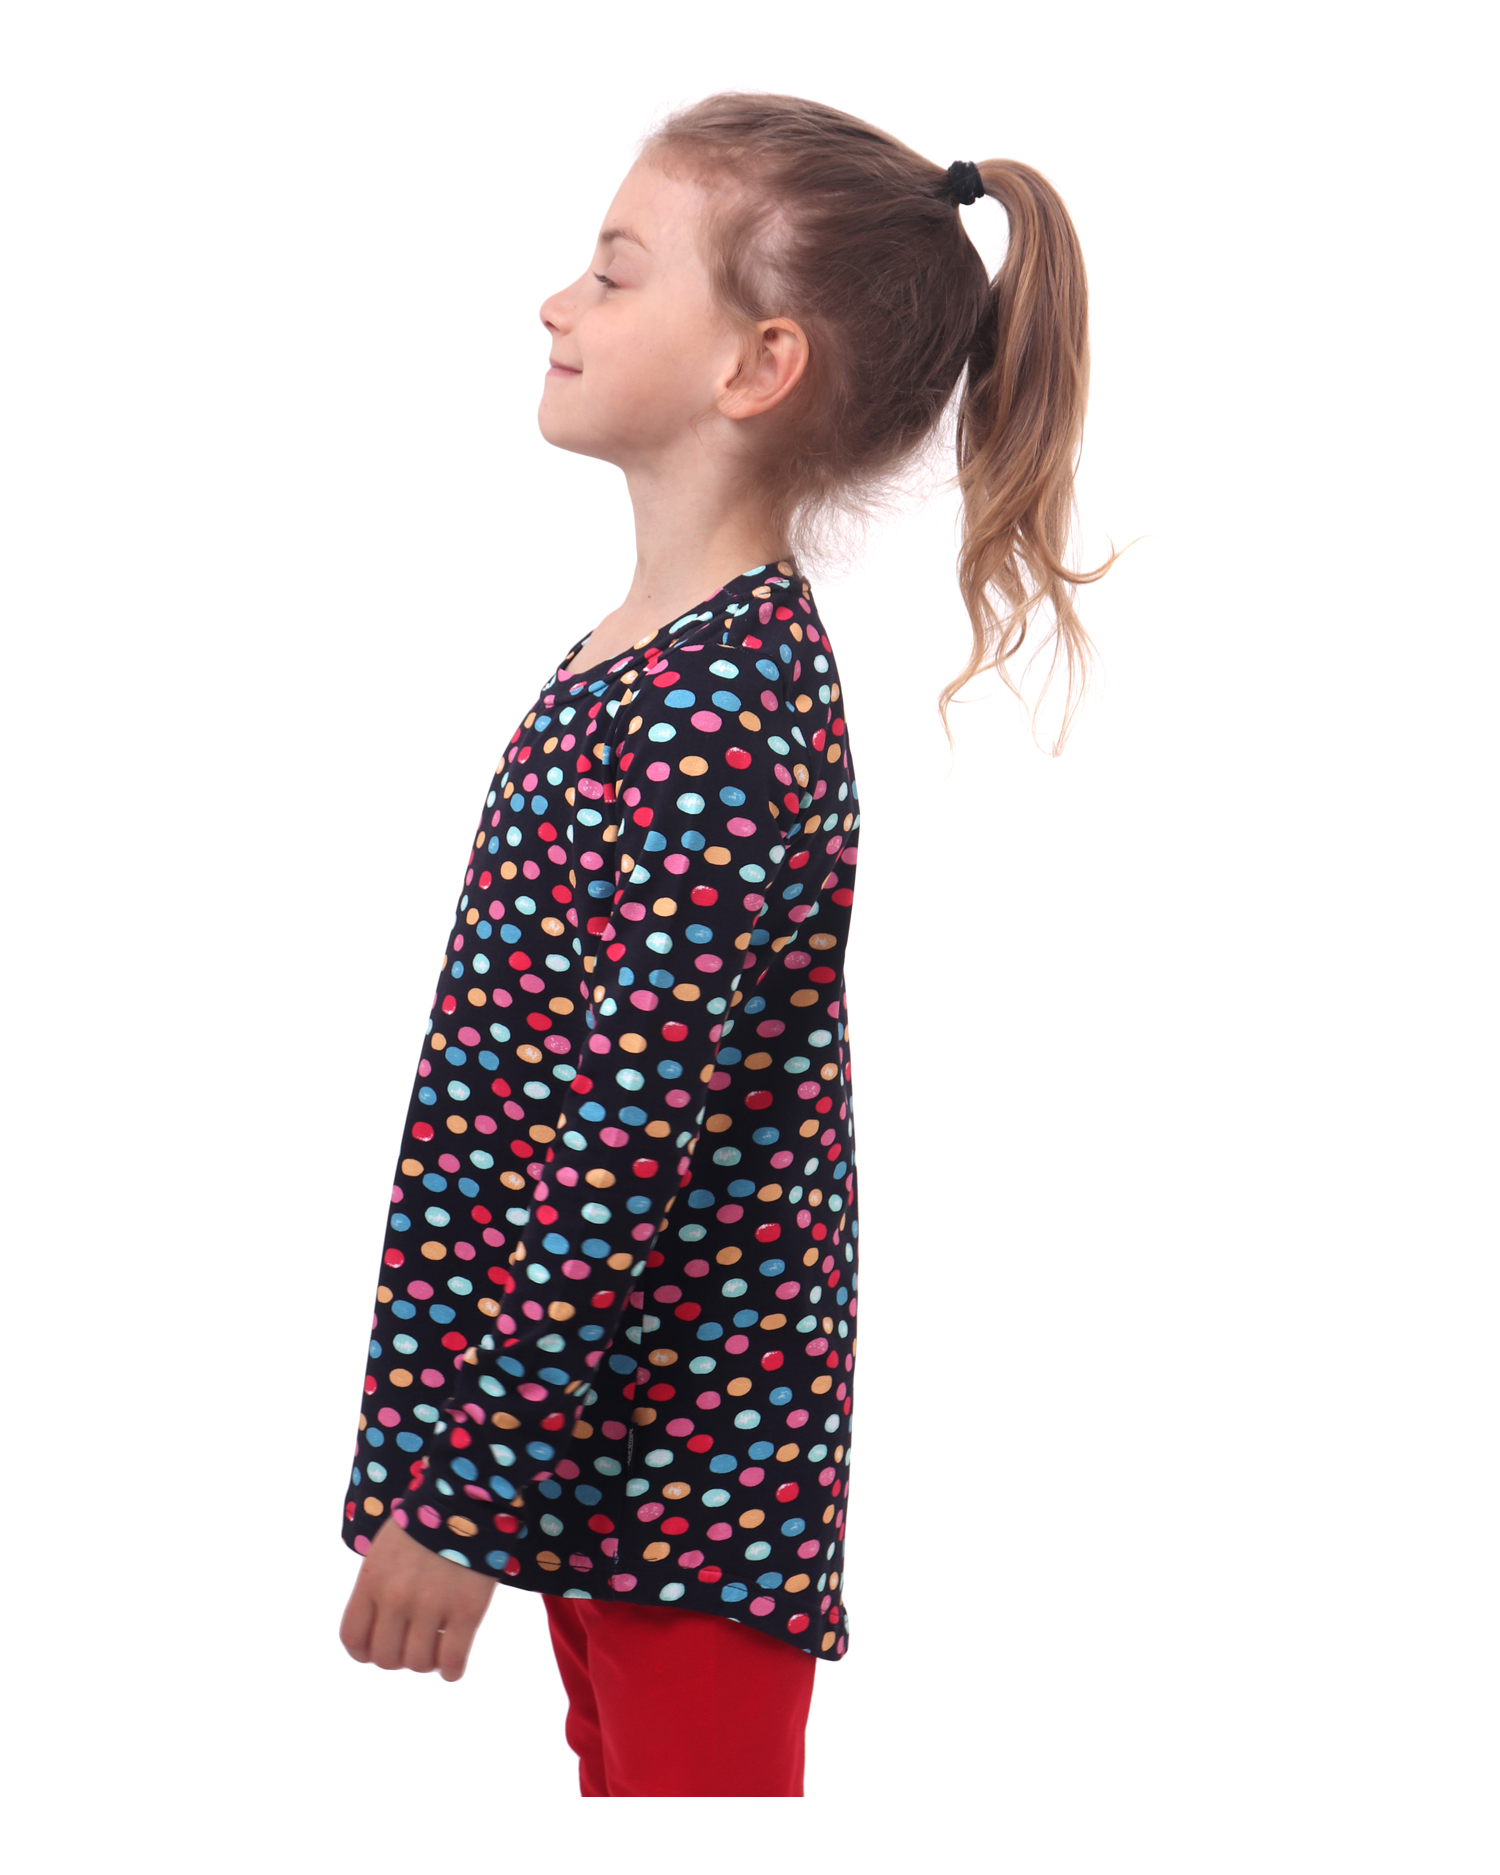 Dívčí tričko, dlouhý rukáv, barevné puntíky (lentilky) na modré